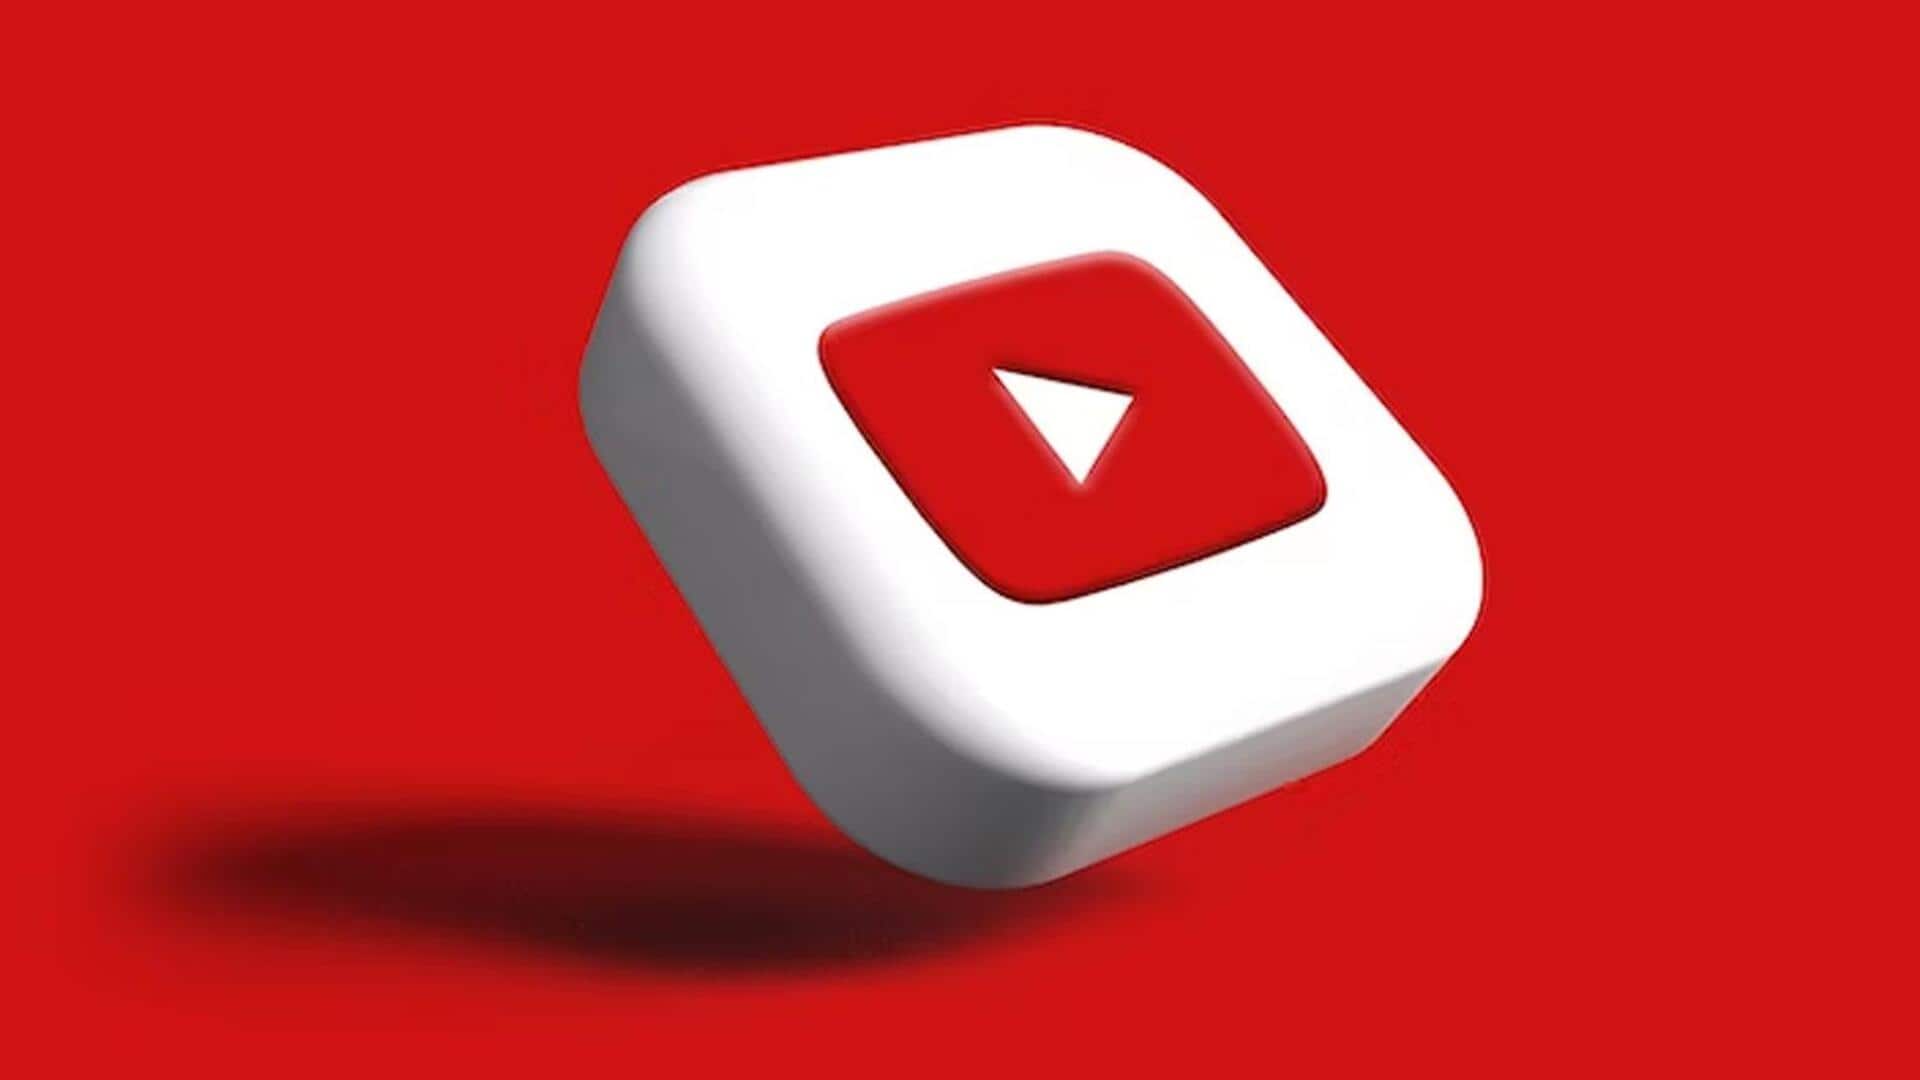 यूट्यूब शॉट्स देखने वाले मासिक यूजर्स की संख्या 2 अरब हुई- गूगल रिपोर्ट